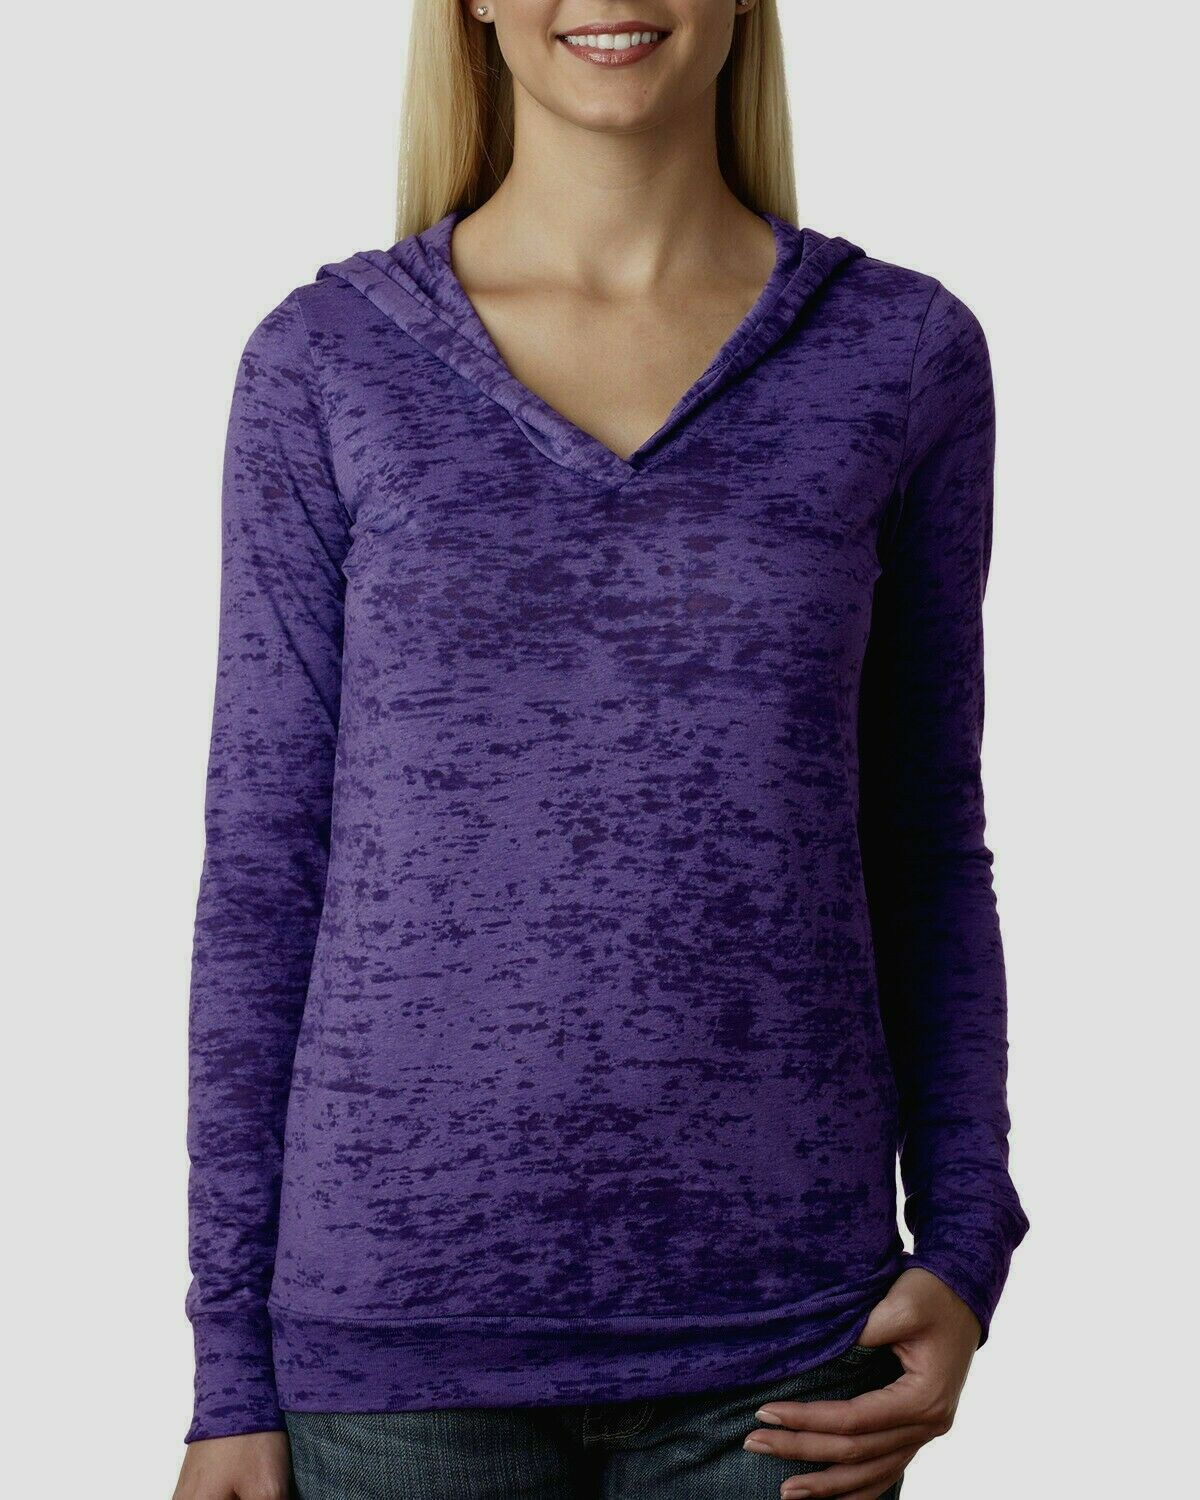 Next Level  Women's Burnout Long Sleeve T-shirt Hoodie New Light Way-6521